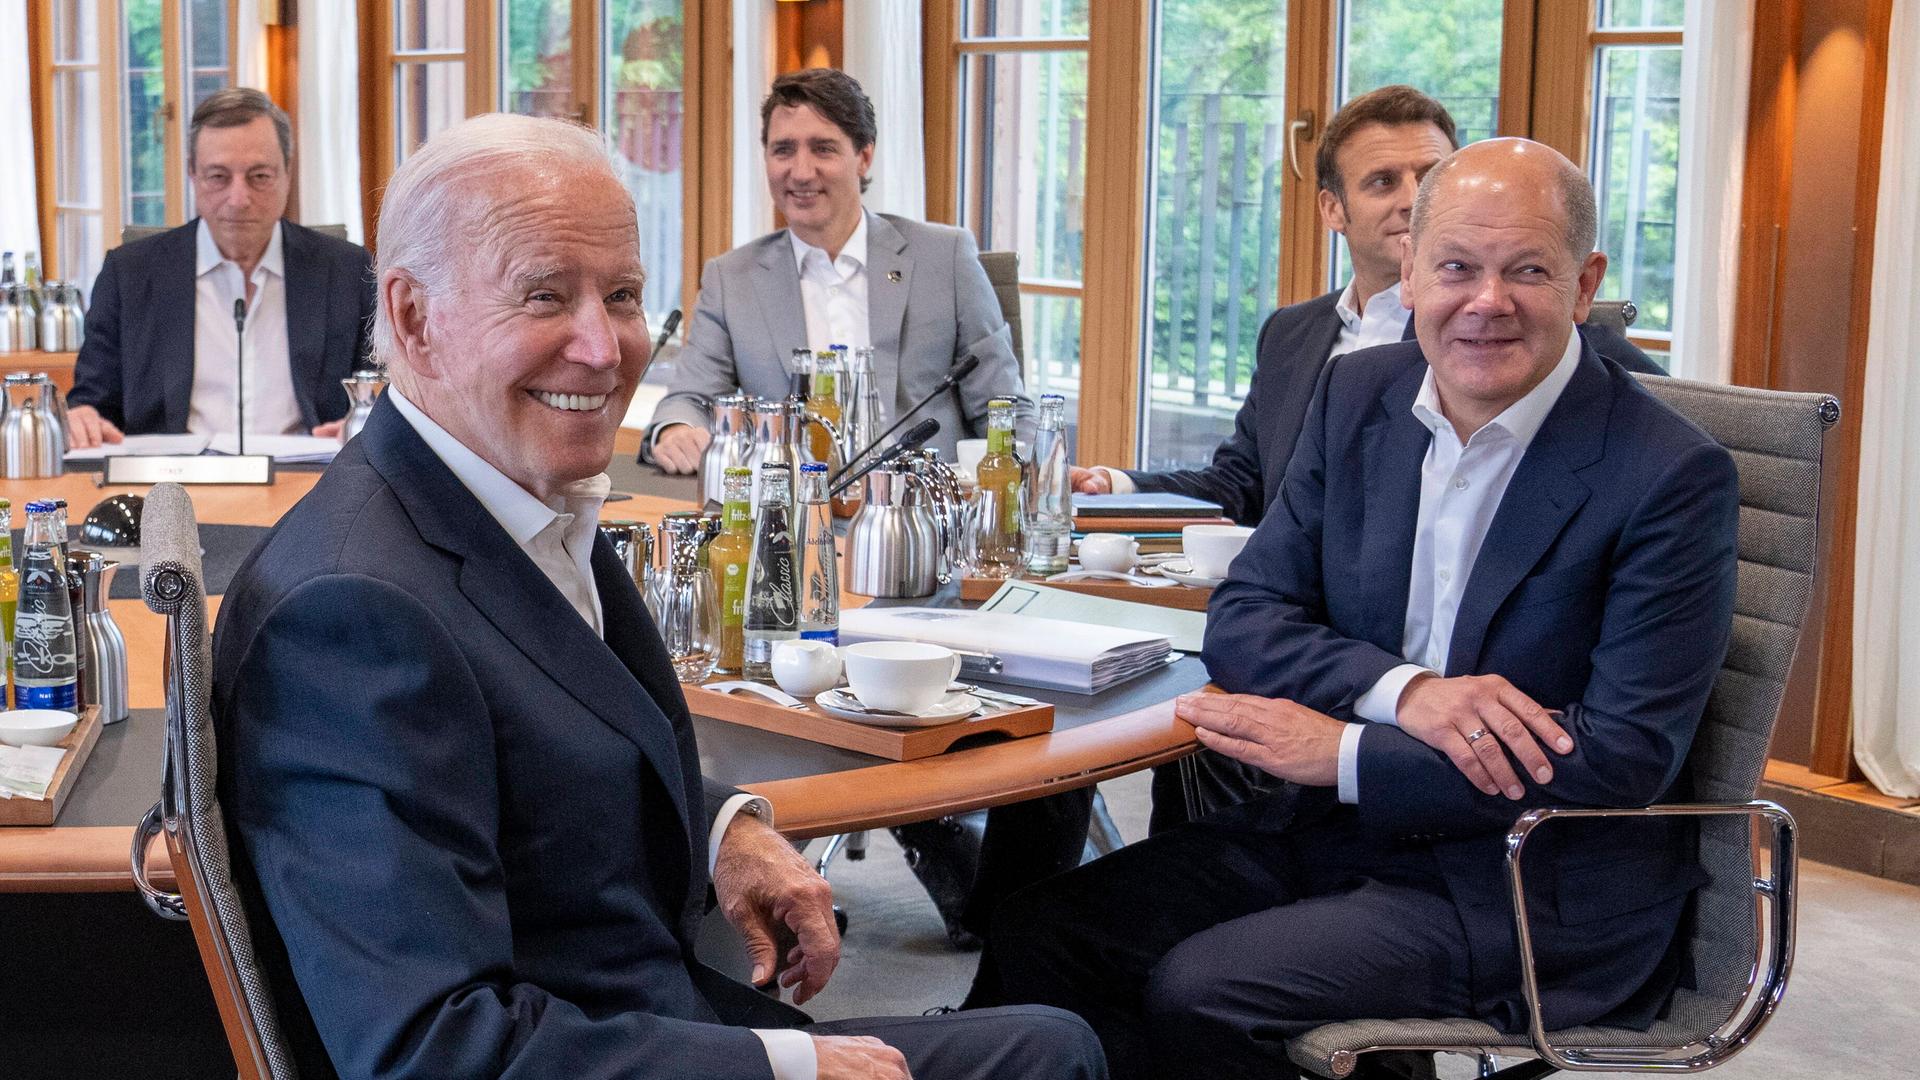 Der kanadische Premierminister Justin Trudeau beim Treffen mit US-Präsident Joe Biden und dem deutschen Bundeskanzler Olaf Scholz auf Schloss Elmau in Deutschland.